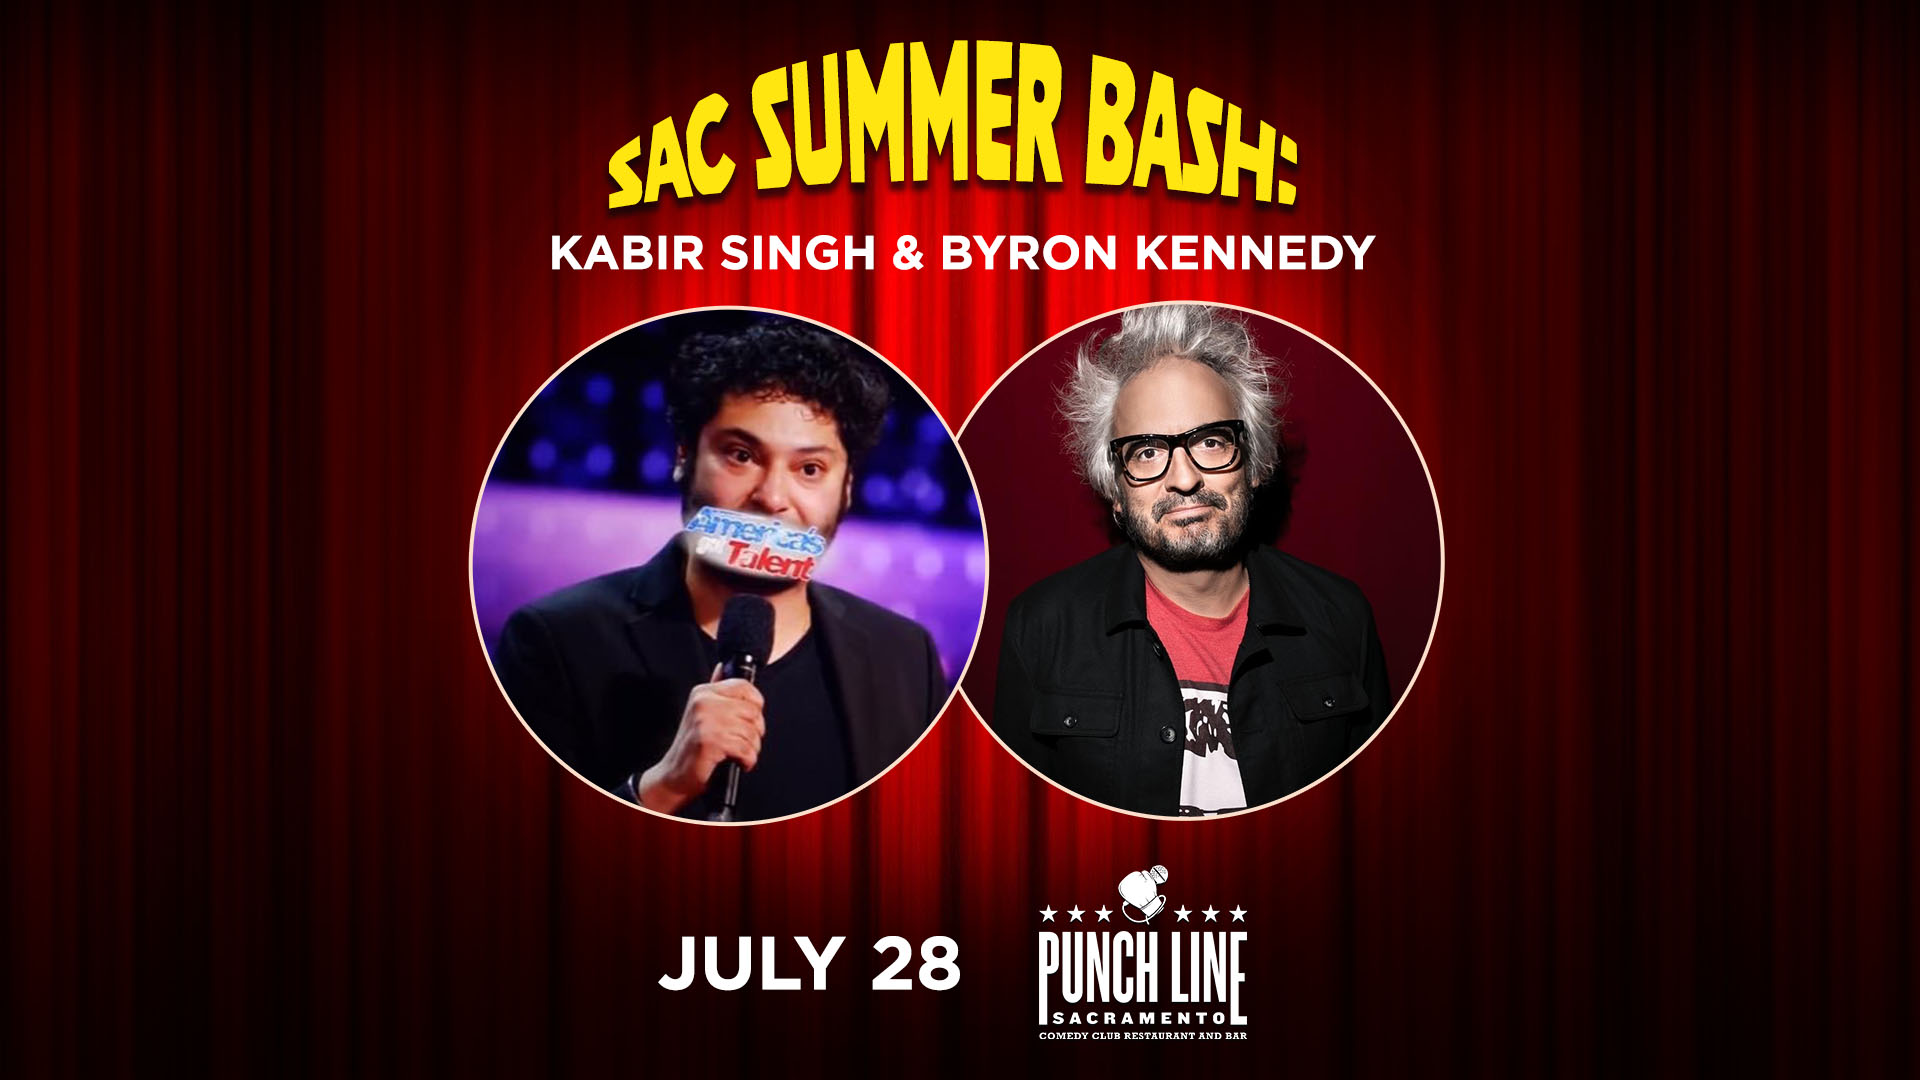 Sac Summer Comedy Bash with Kabir Singh & Byron Kennedy